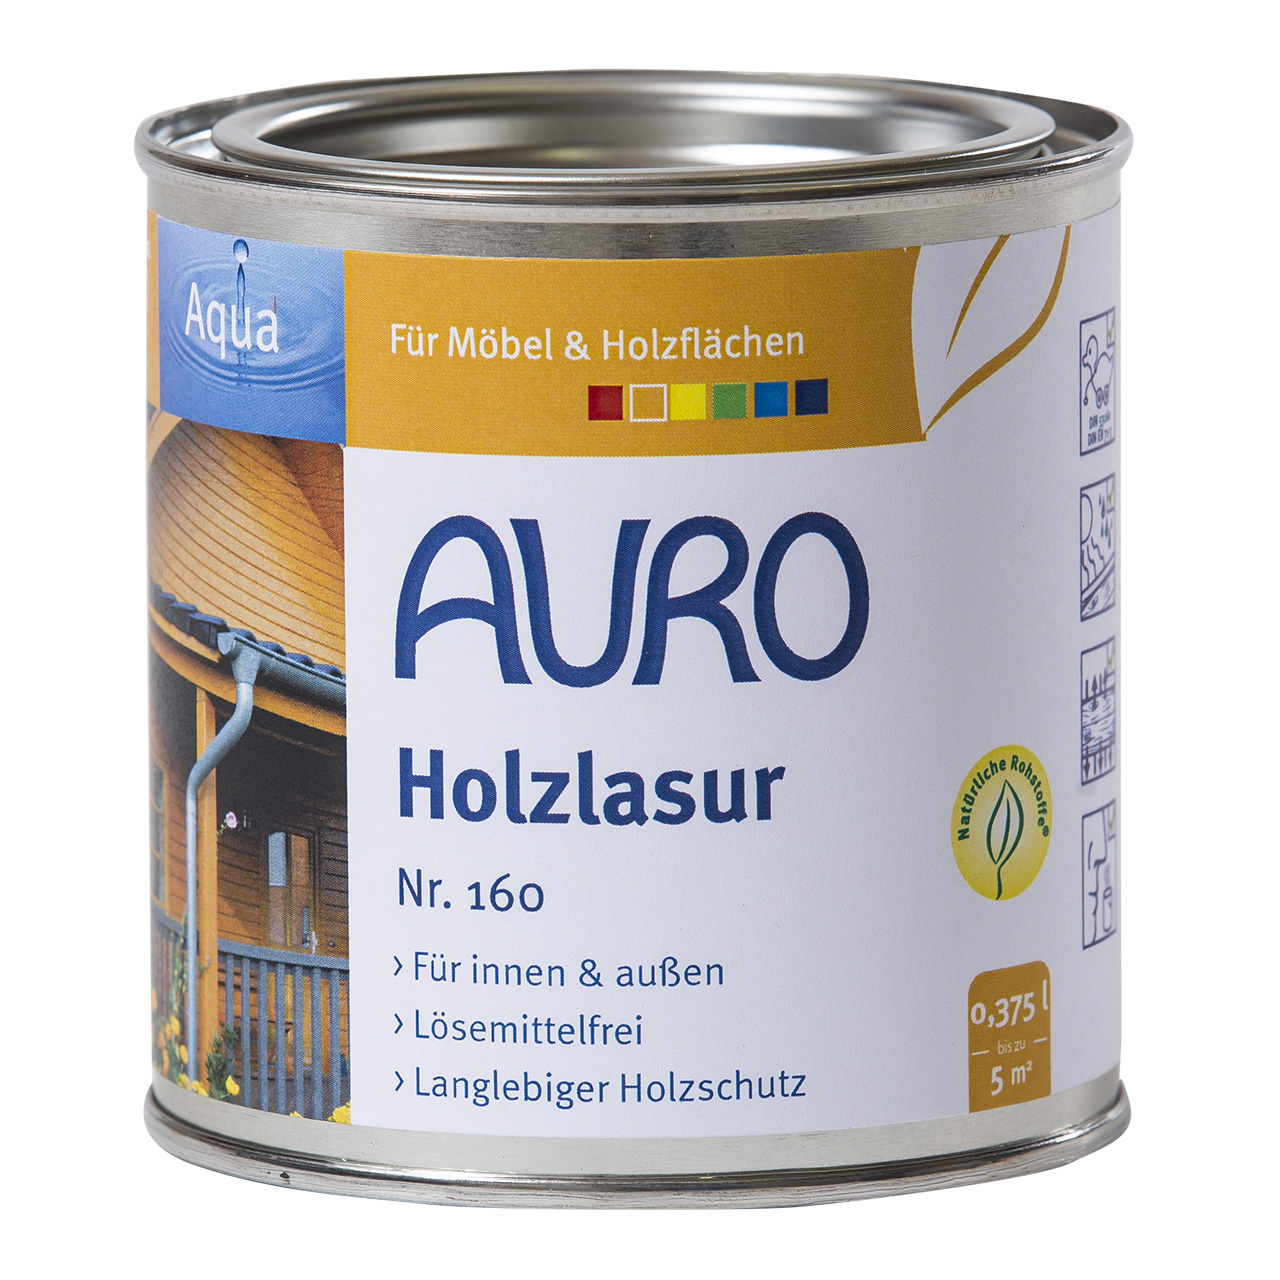 Auro Holzlasur Nr. 160 mahagoni, 0,375ml